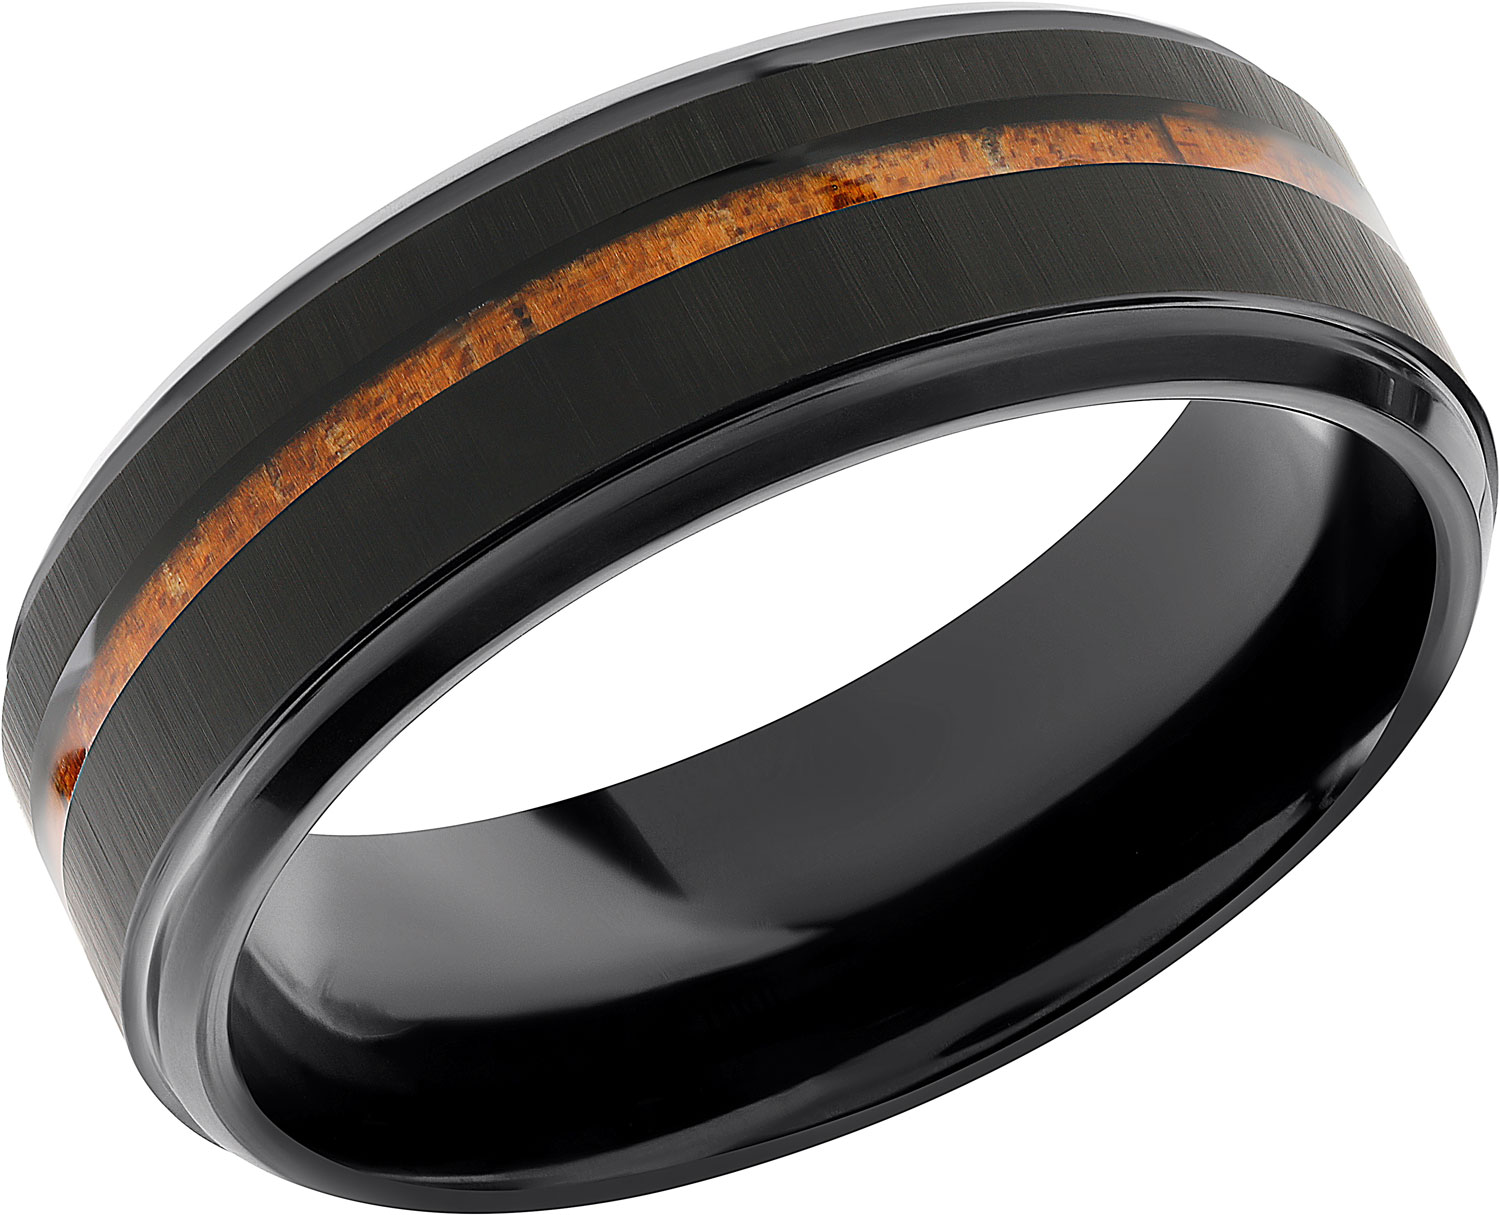 Мужское вольфрамовое кольцо POYA POYA-N-019 c деревянной отделкой